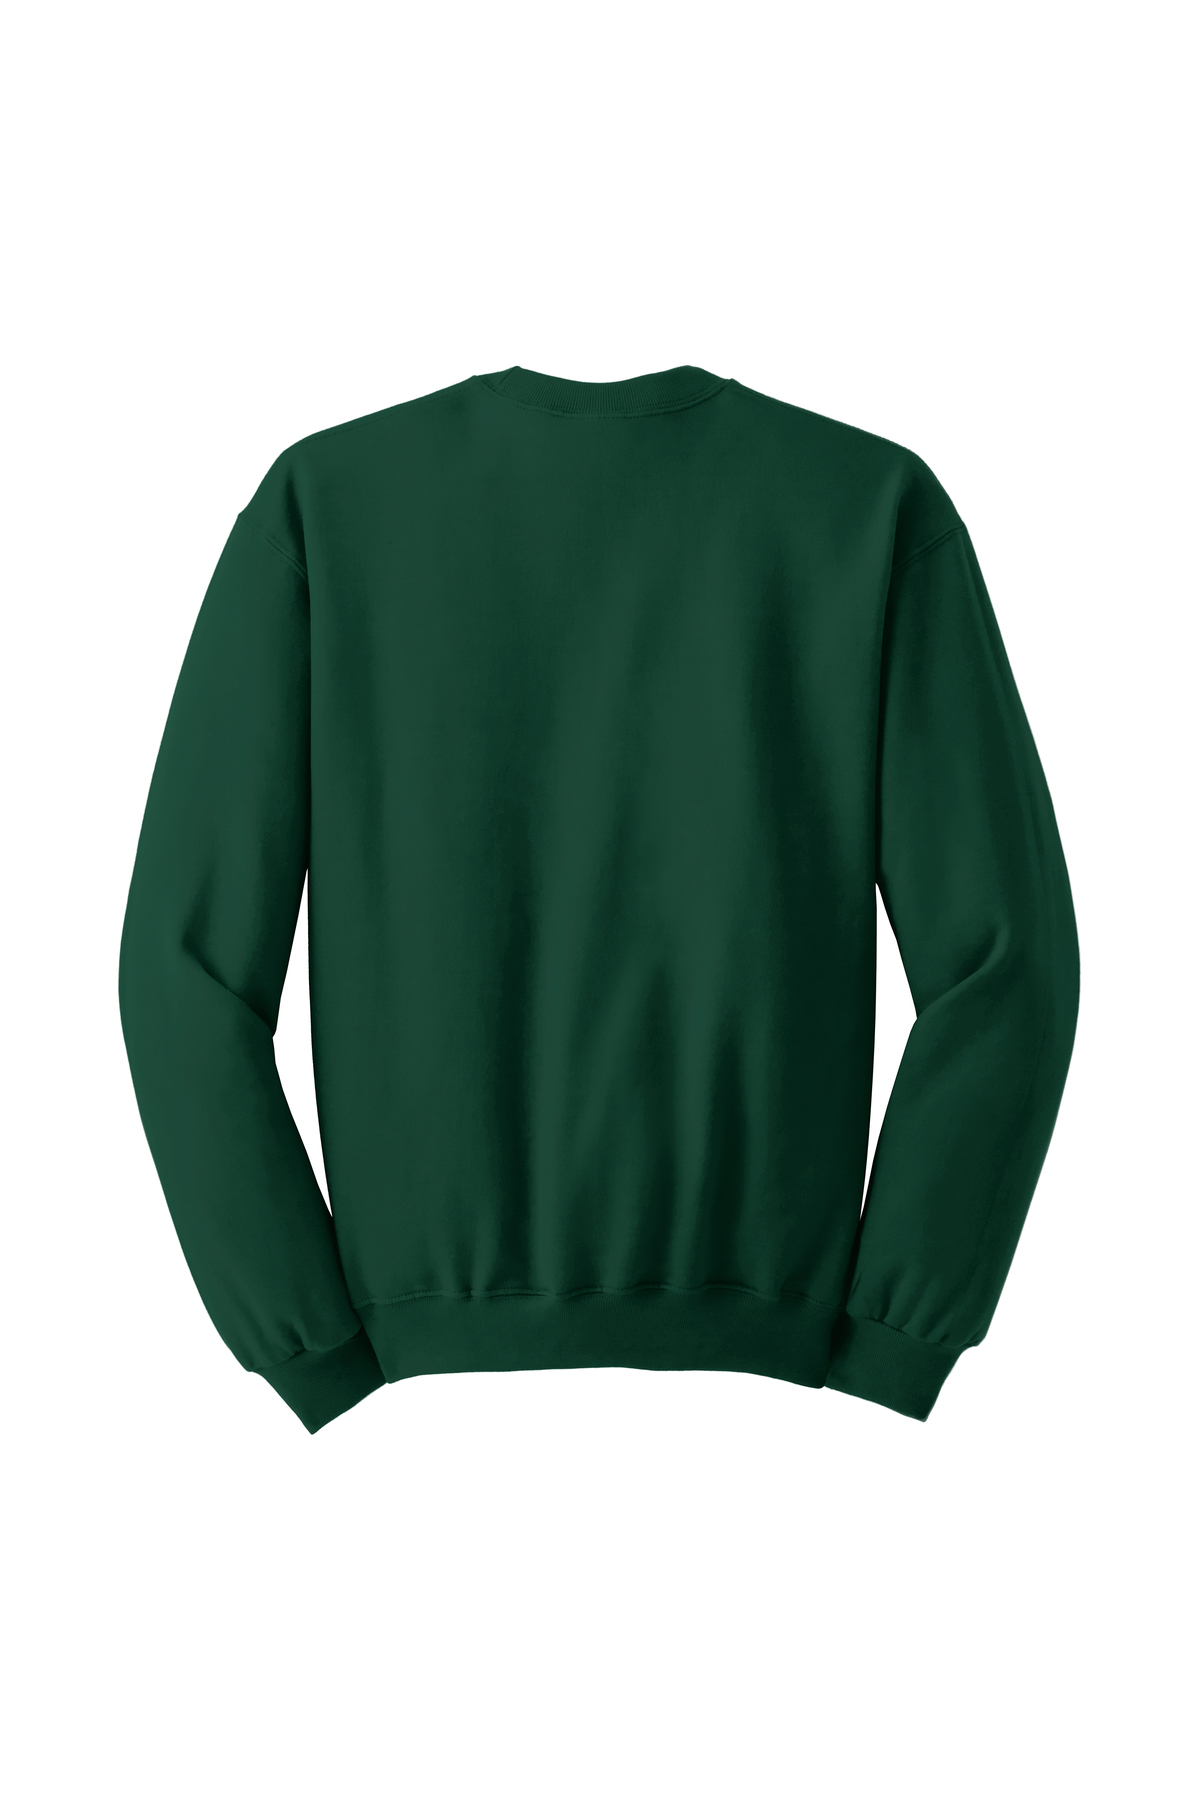 Jerzees Nublend Crewneck Sweatshirt Crewnecks Sweatshirts Fleece Sanmar [ 1800 x 1200 Pixel ]